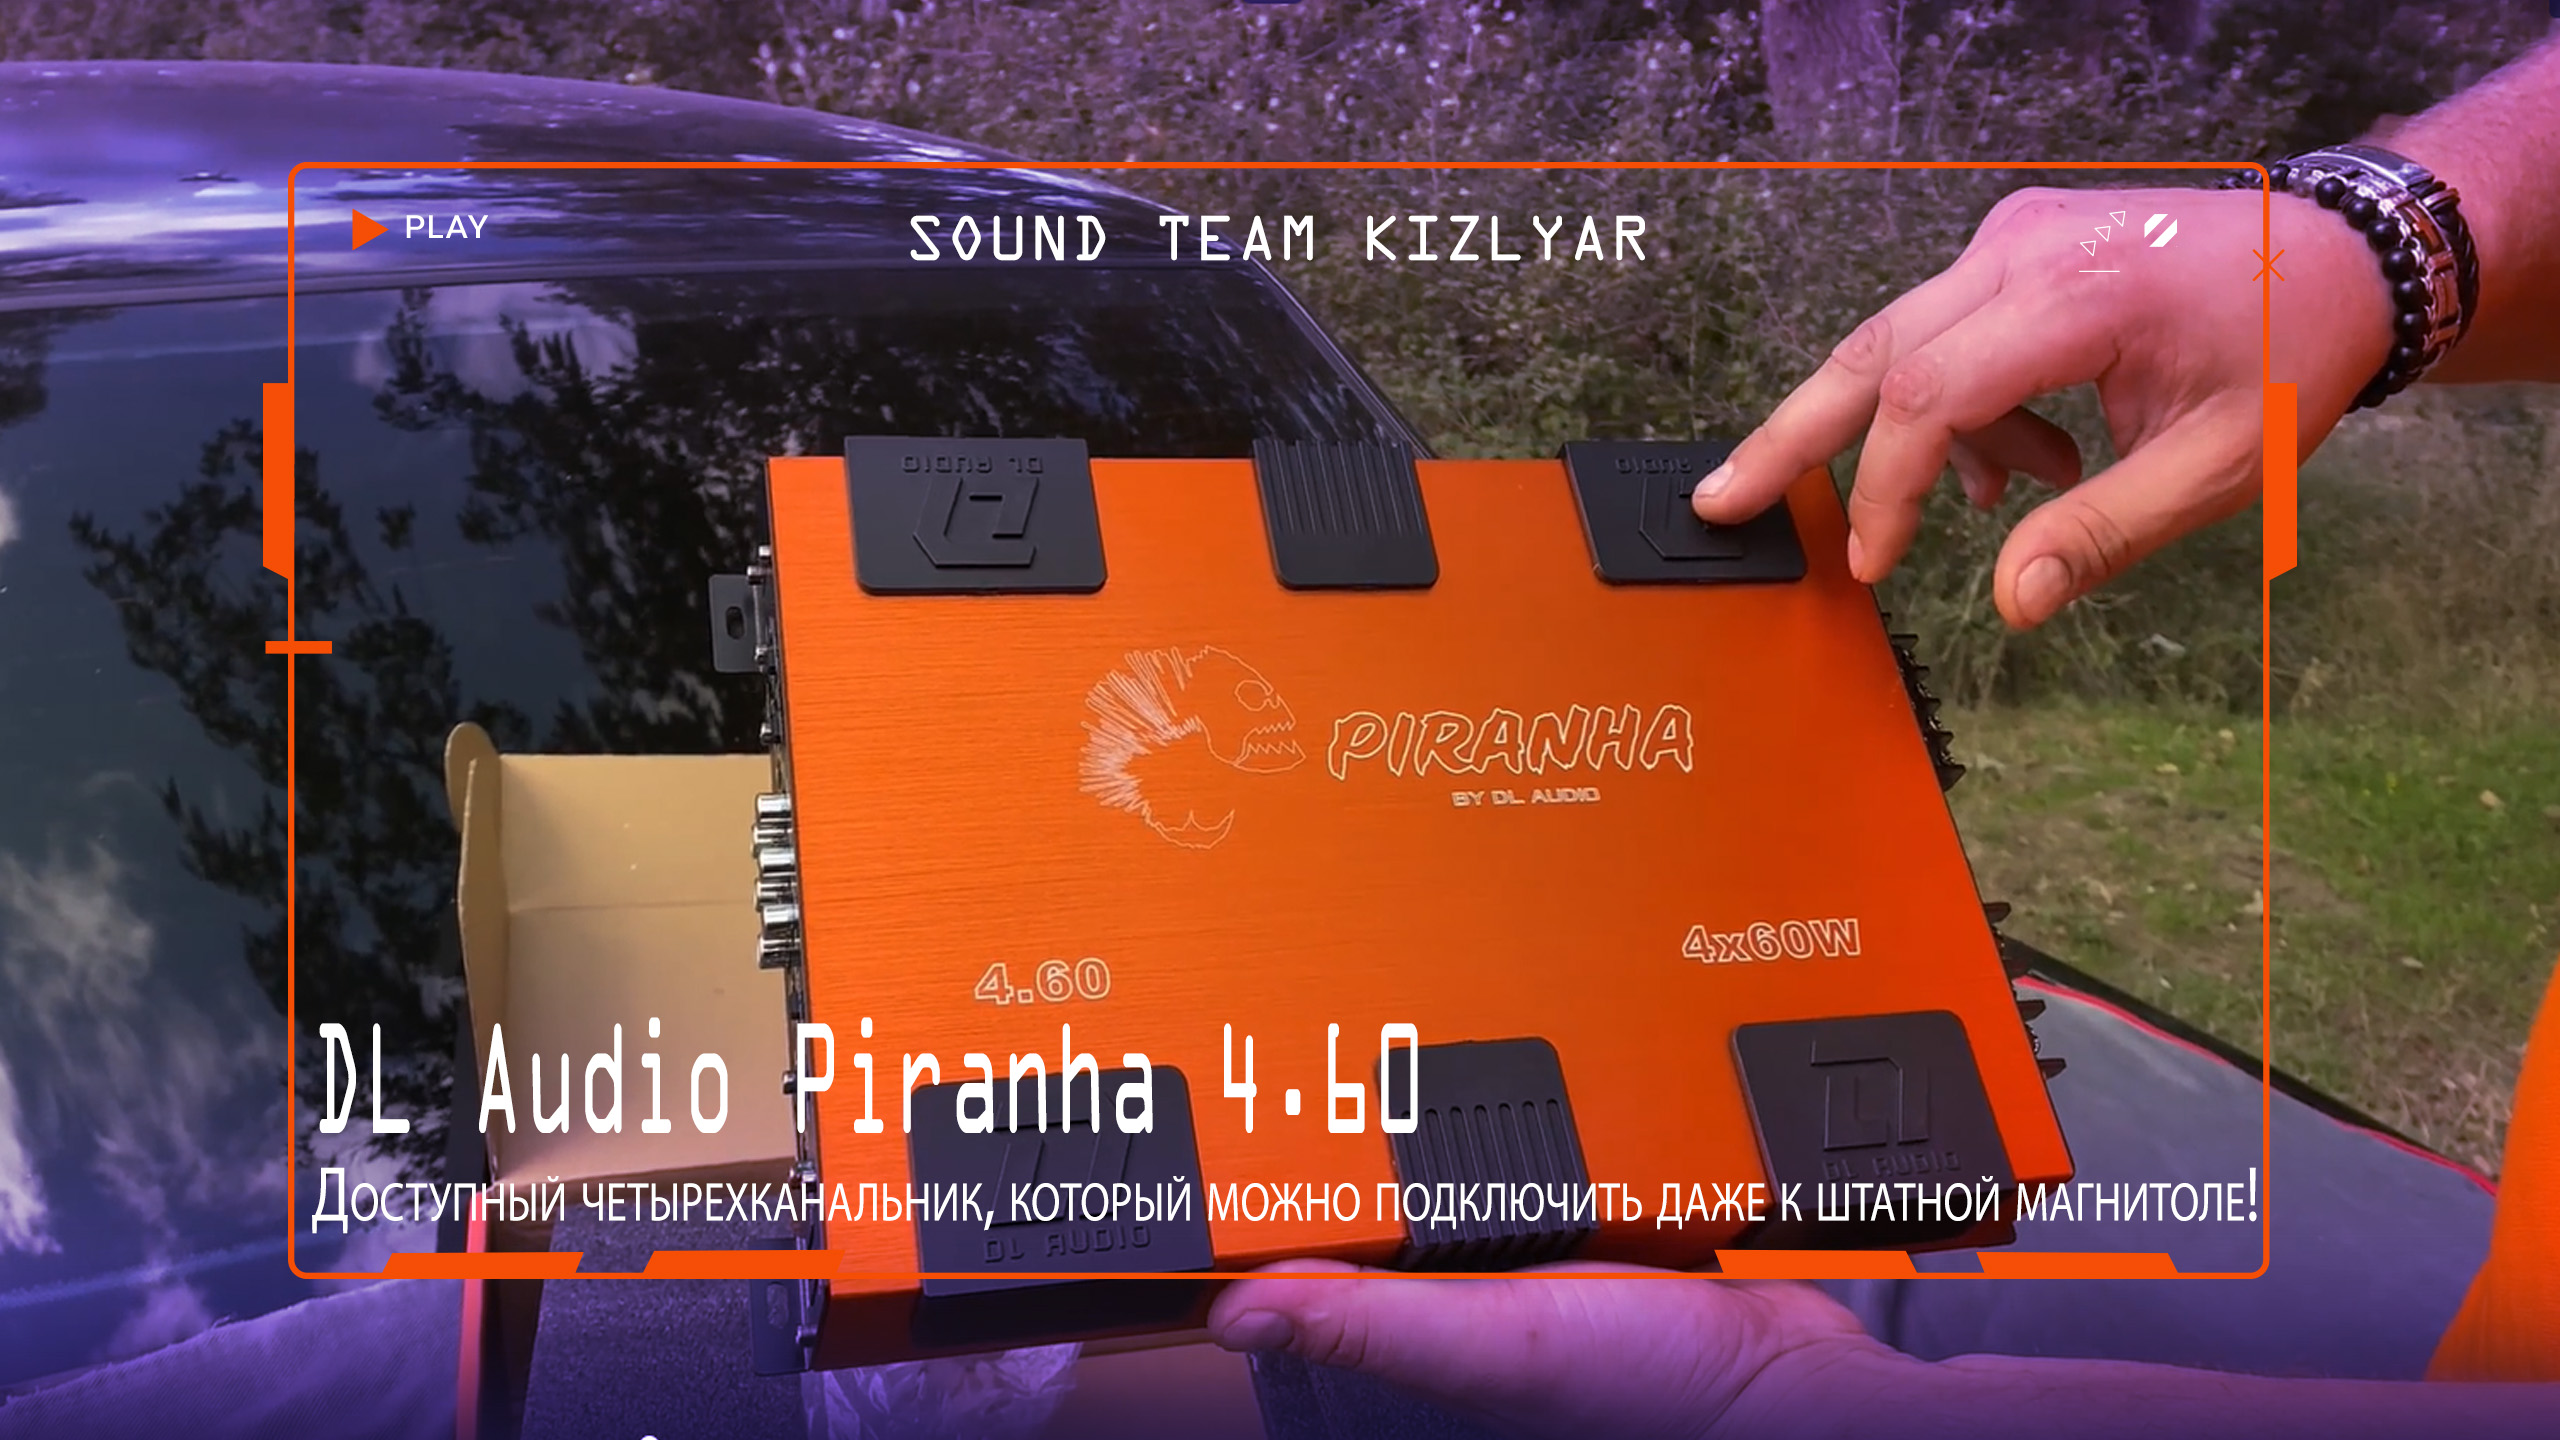 Доступный четырехканальник, который можно подключить даже к штатной магнитоле! DL Audio Piranha 4.60